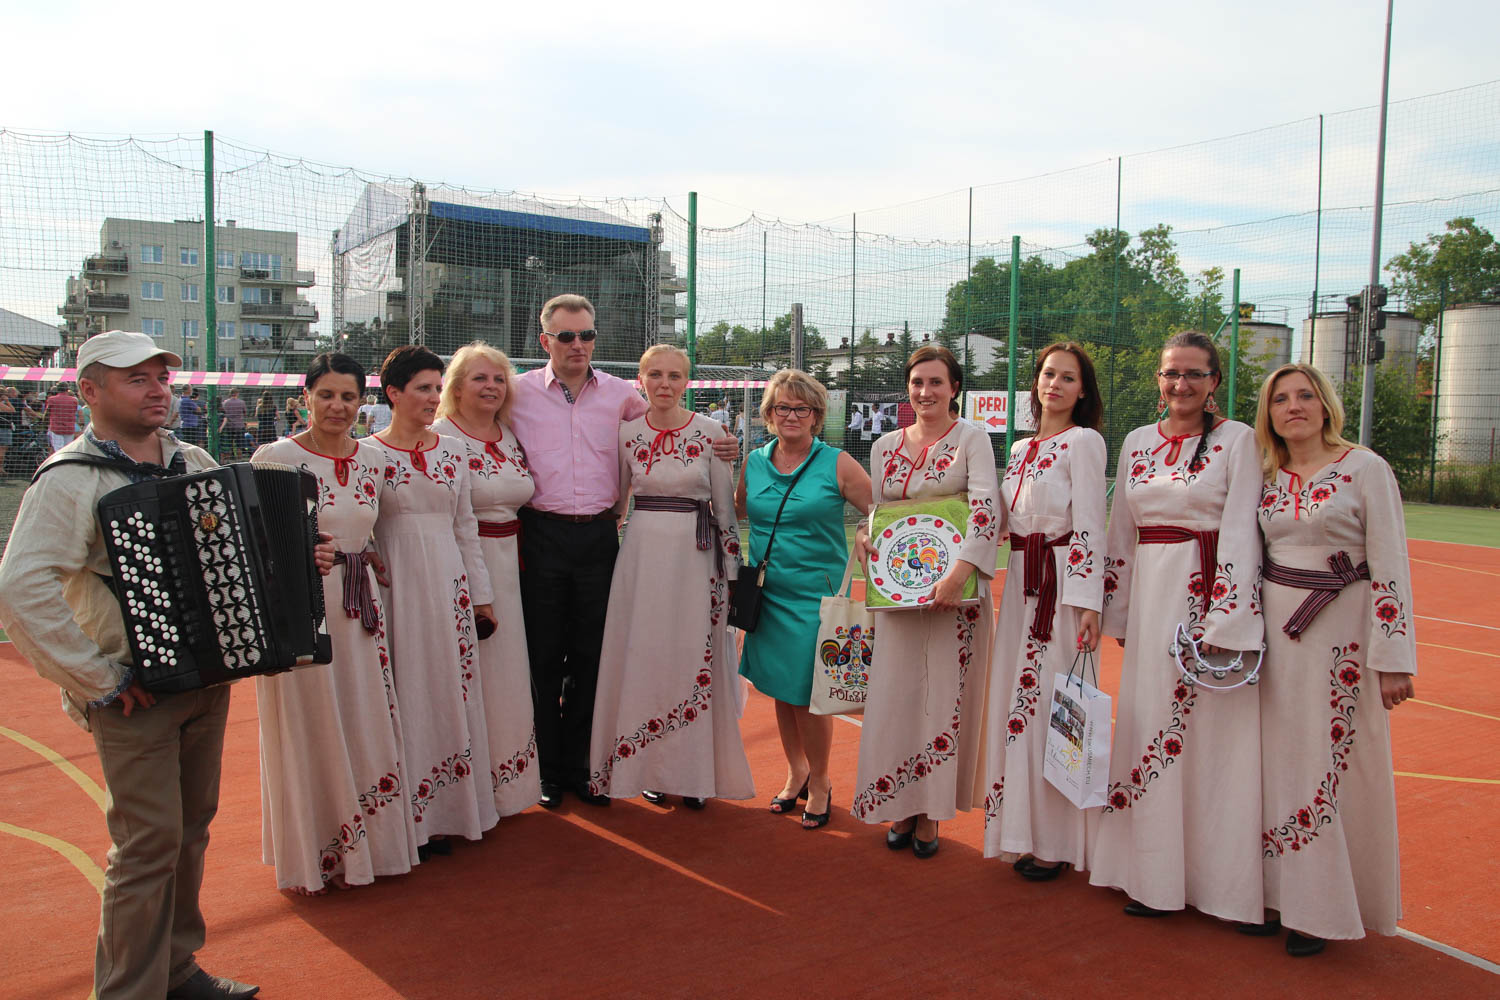 III Międzynarodowy Festiwal Folkloru 28 lipca - 3 sierpnia 2015